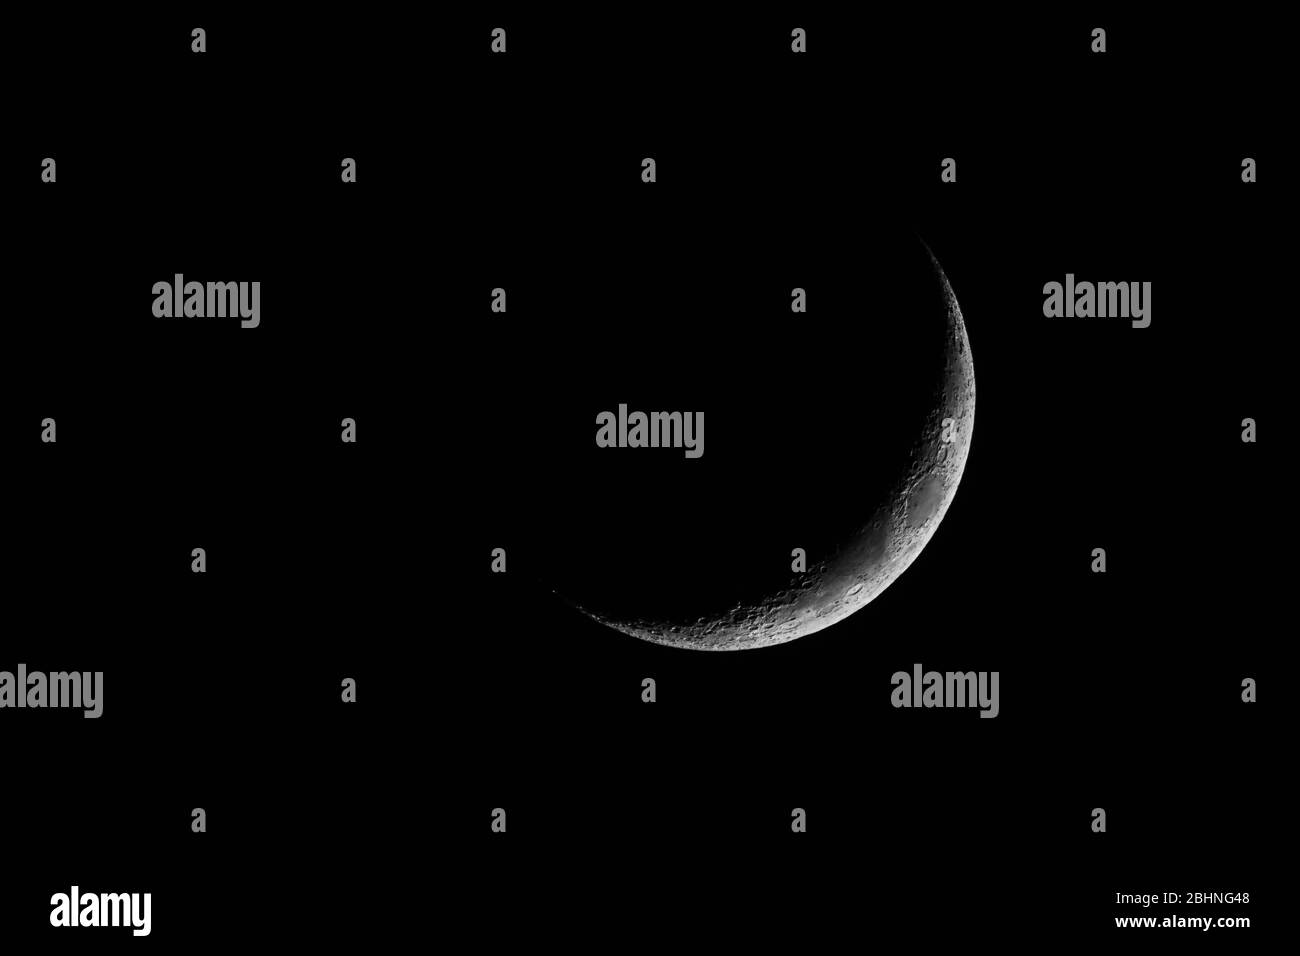 nueva luna que se eleva sobre el cielo oscuro por la noche Foto de stock